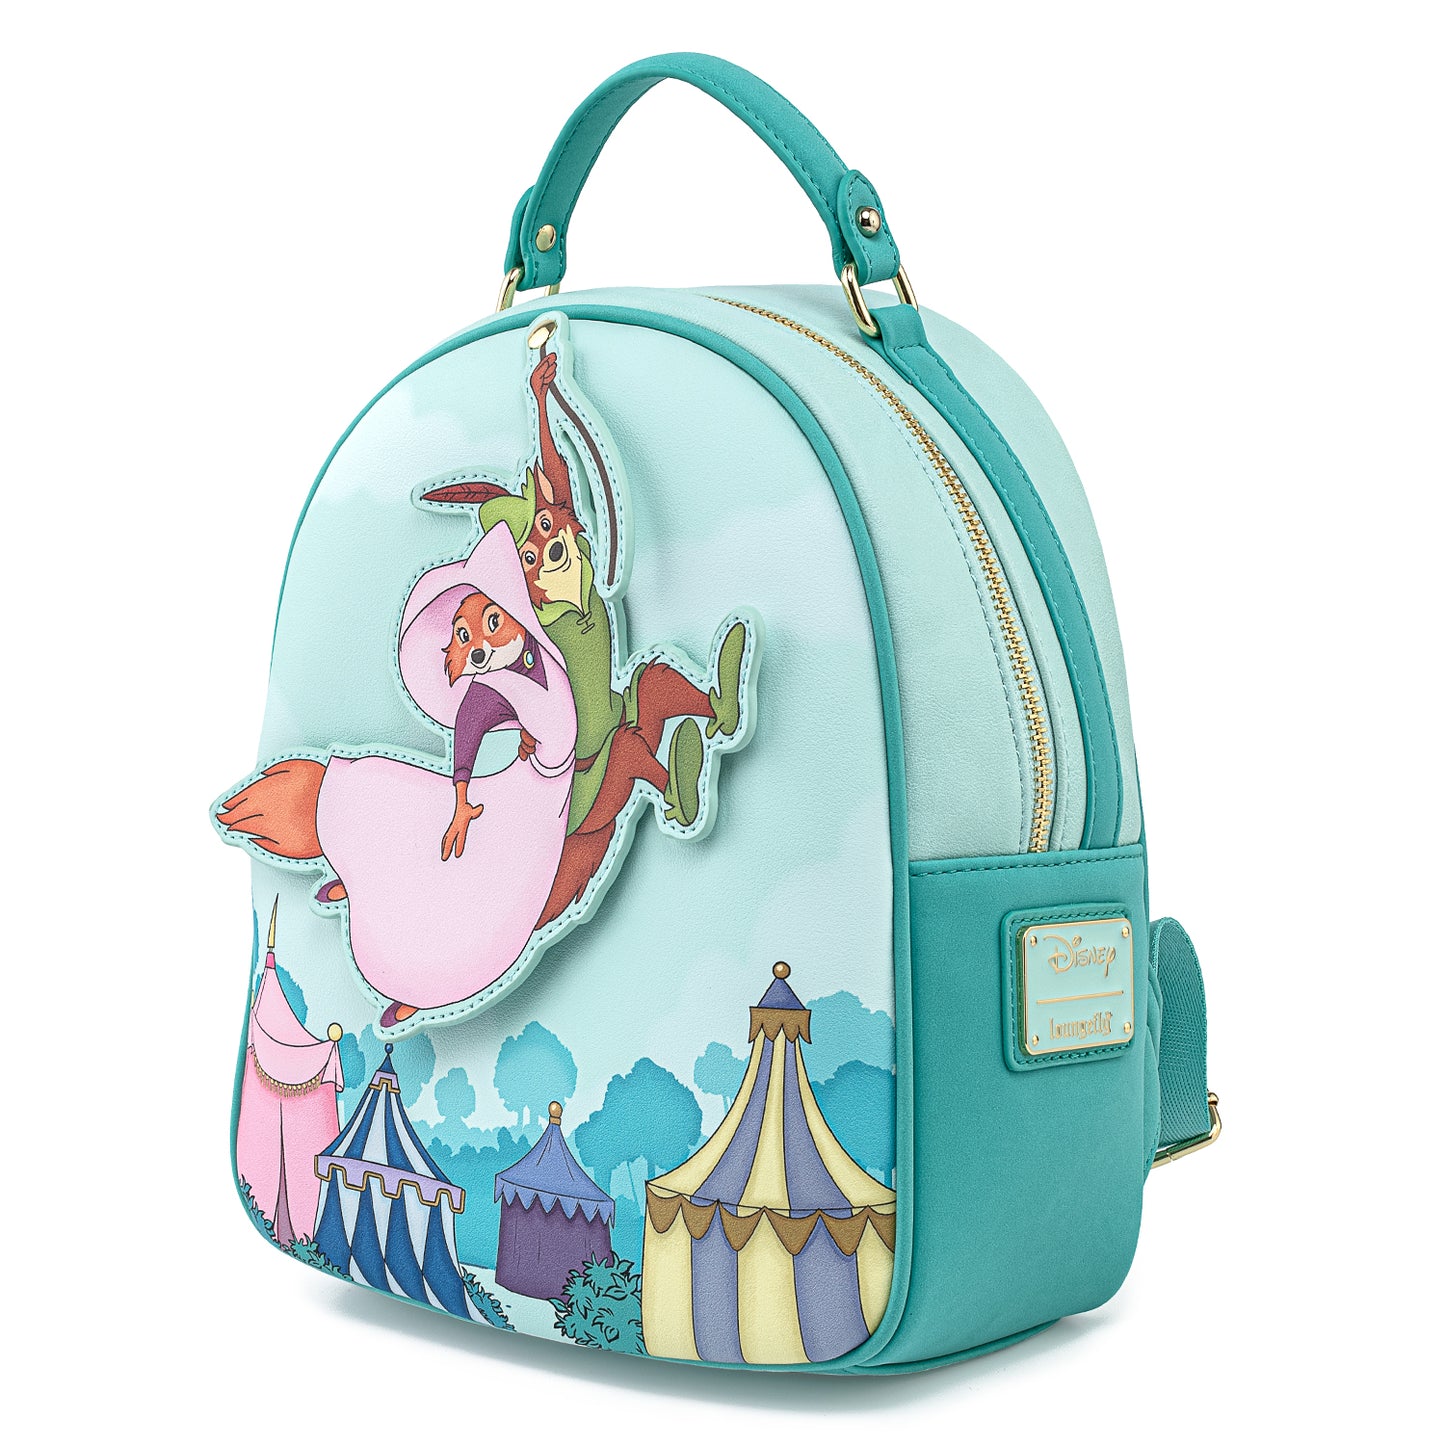 Loungefly x Disney Robin Hood Rescues Maid Marian Mini Backpack